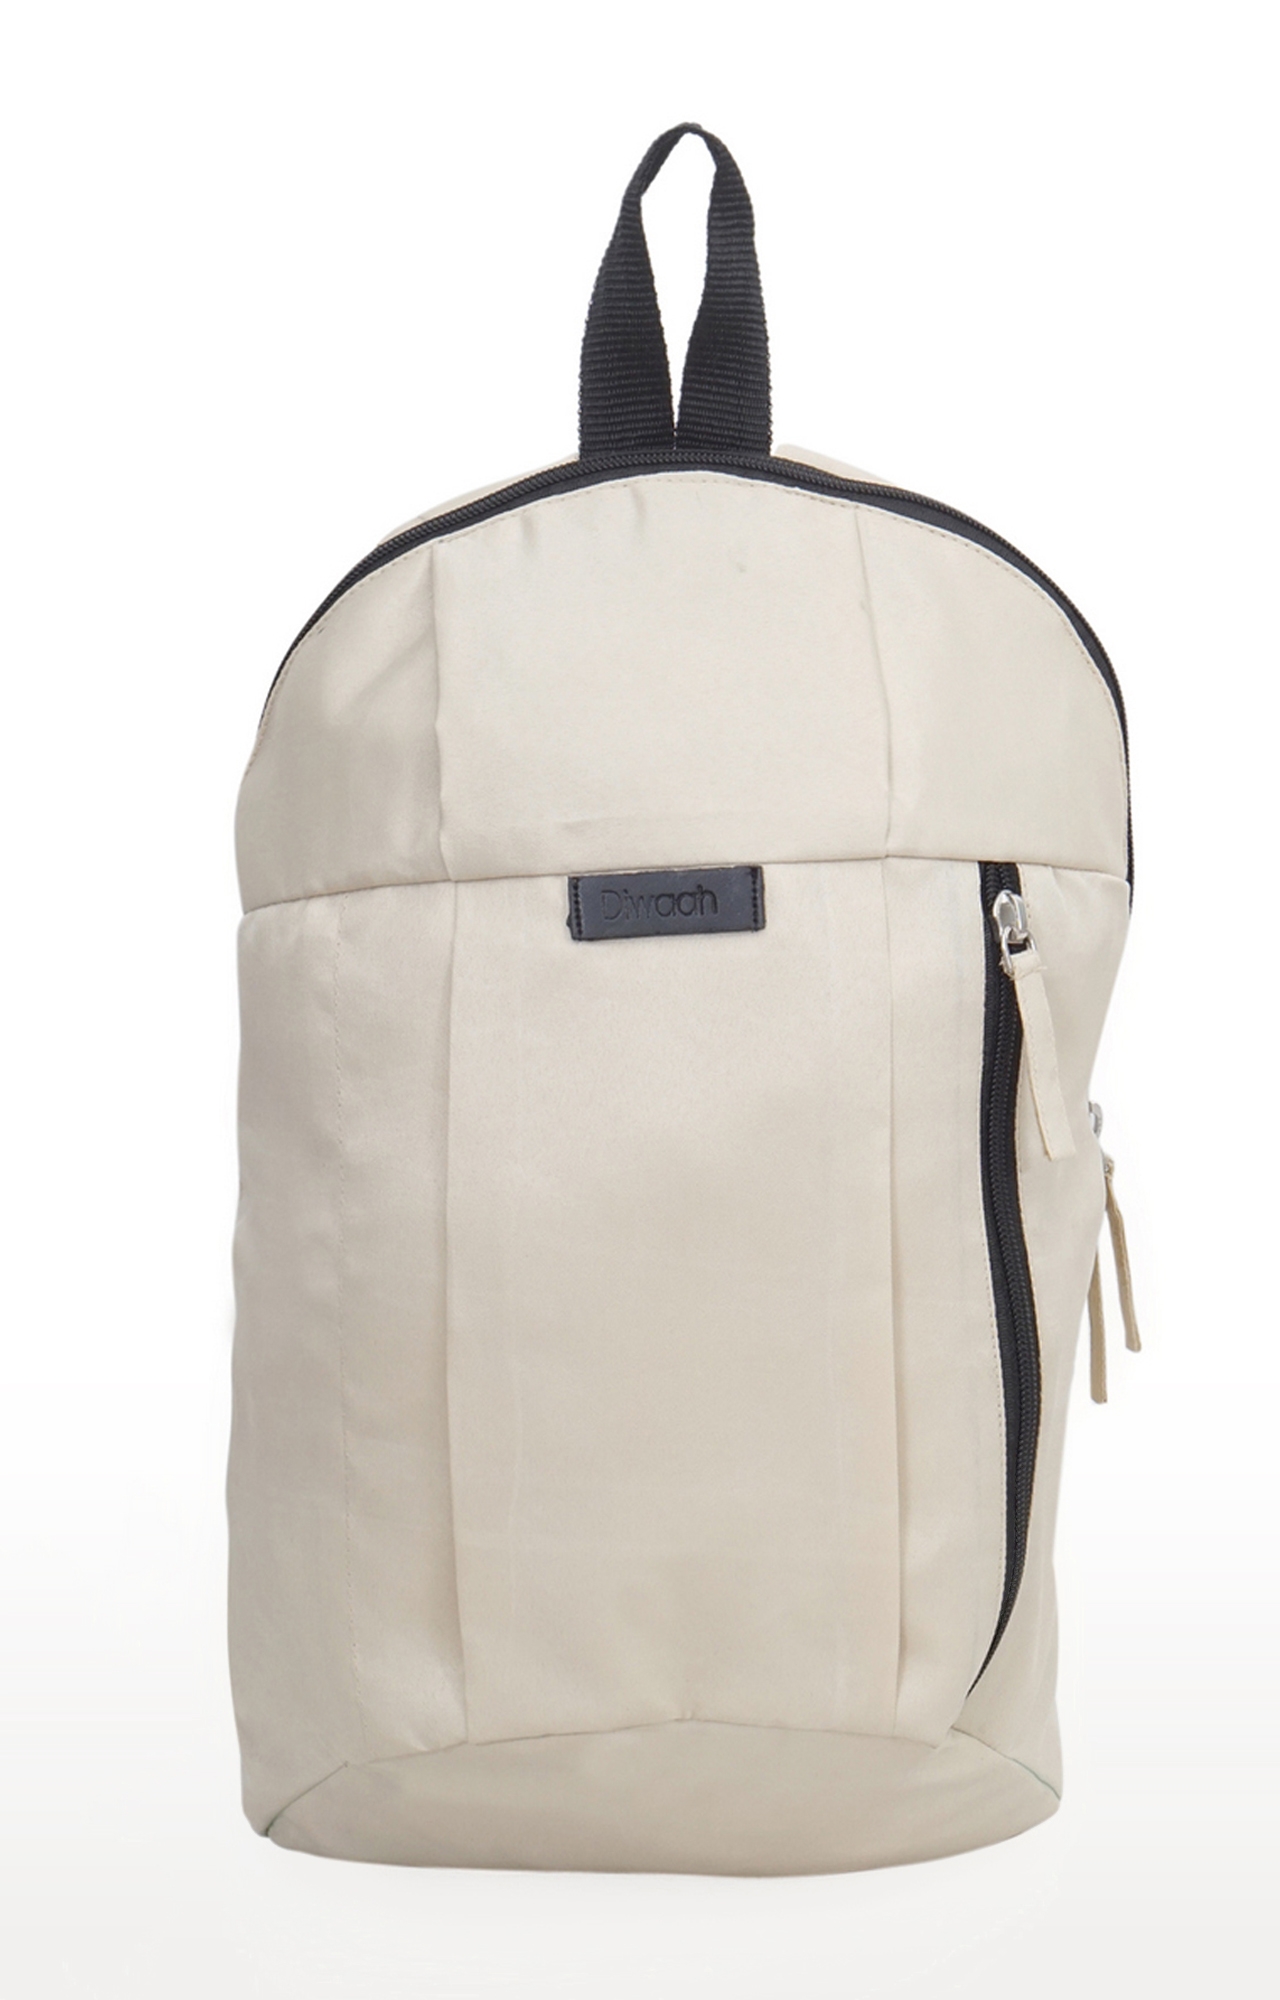 DIWAAH | Diwaah White Solid Backpacks